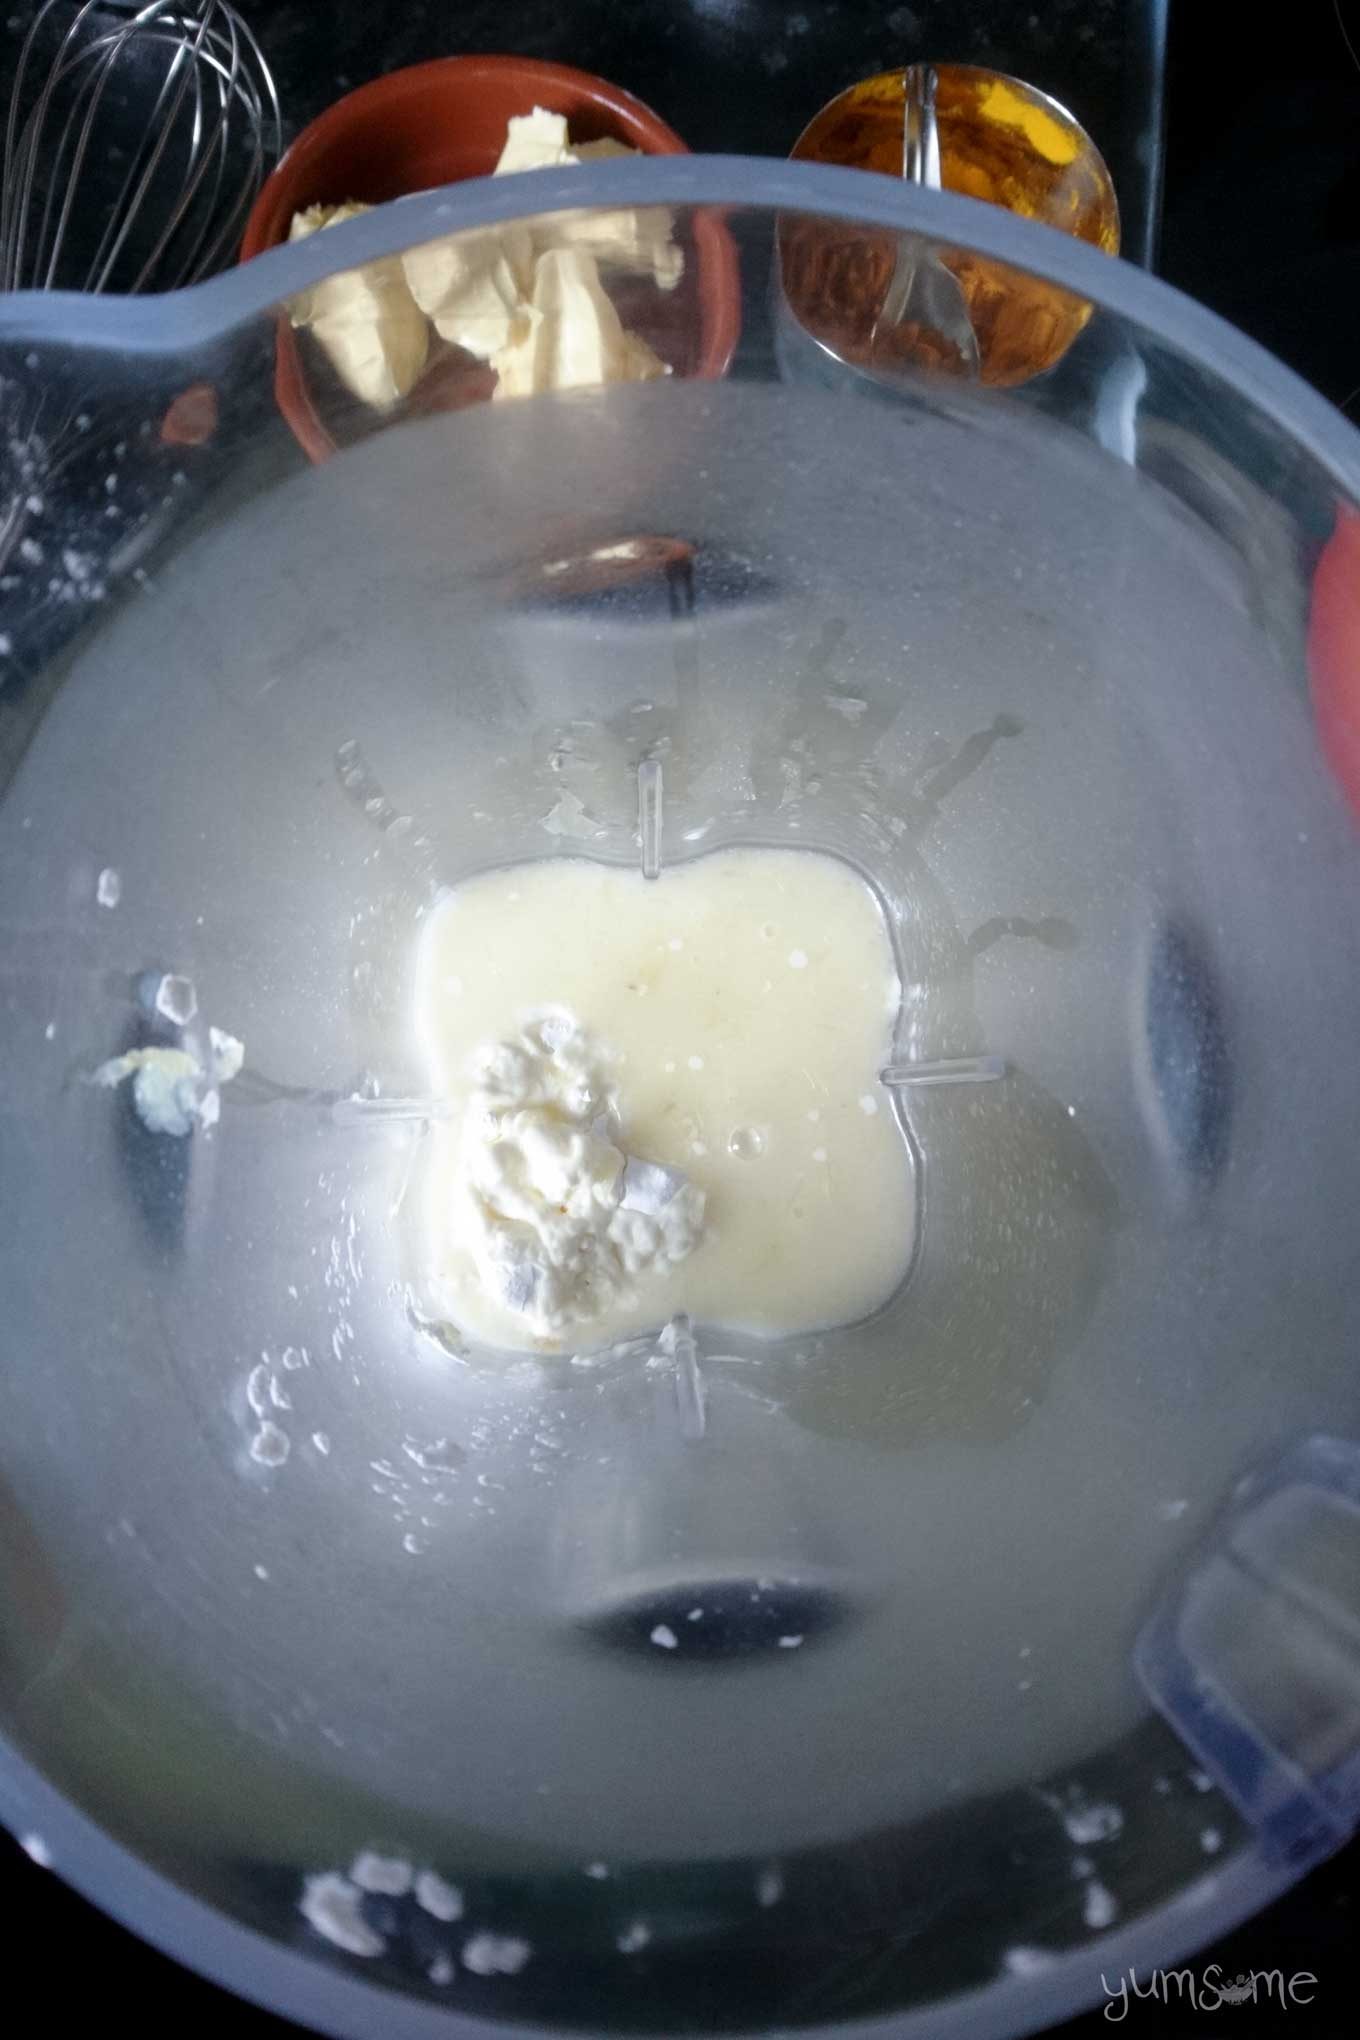 Lemon curd ingredients in a blender jug.